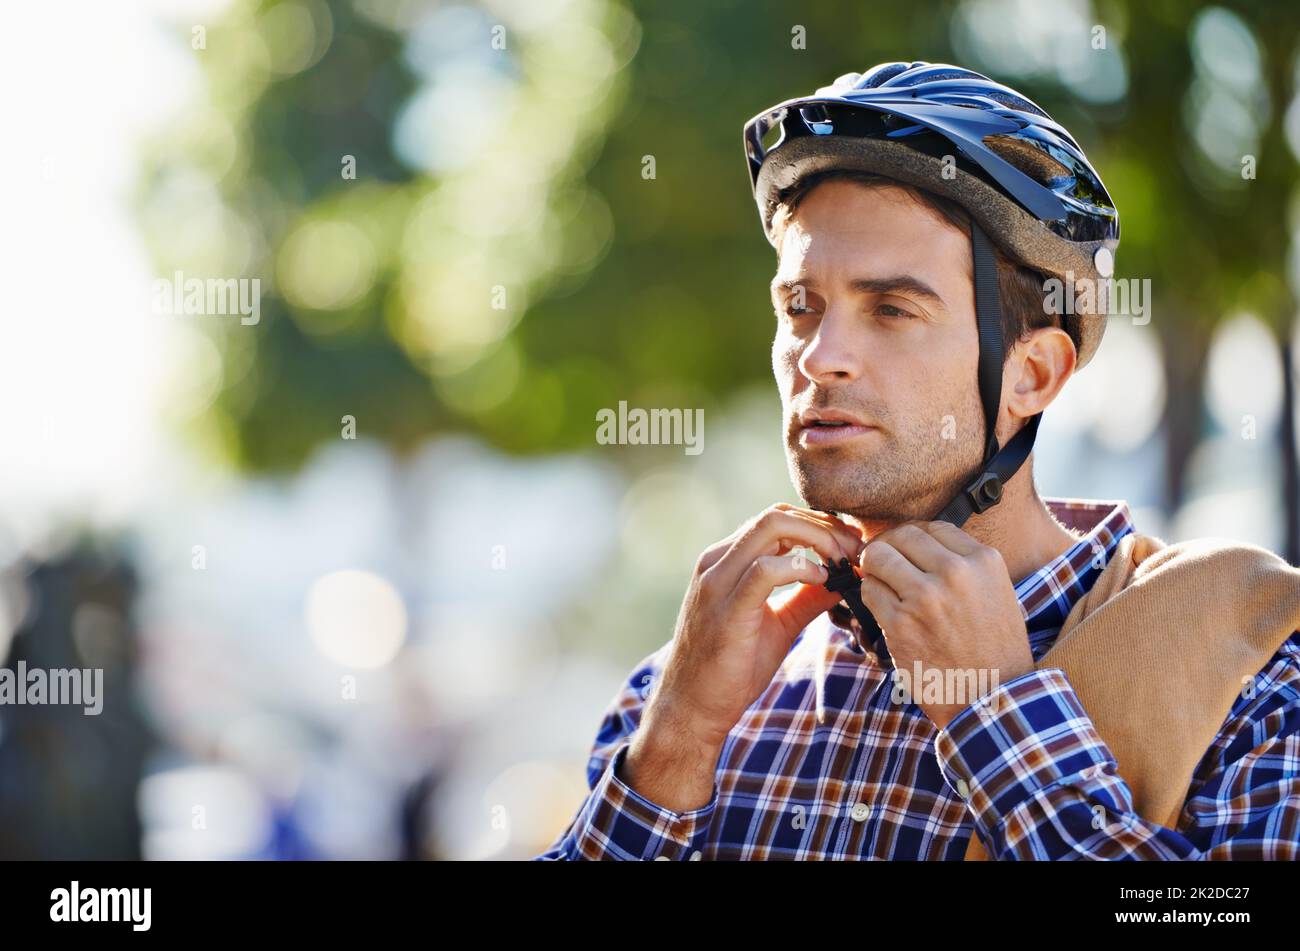 Con cinghie per la sicurezza. Scatto di un bel giovane che si prepara a fare un giro indossando un casco. Foto Stock